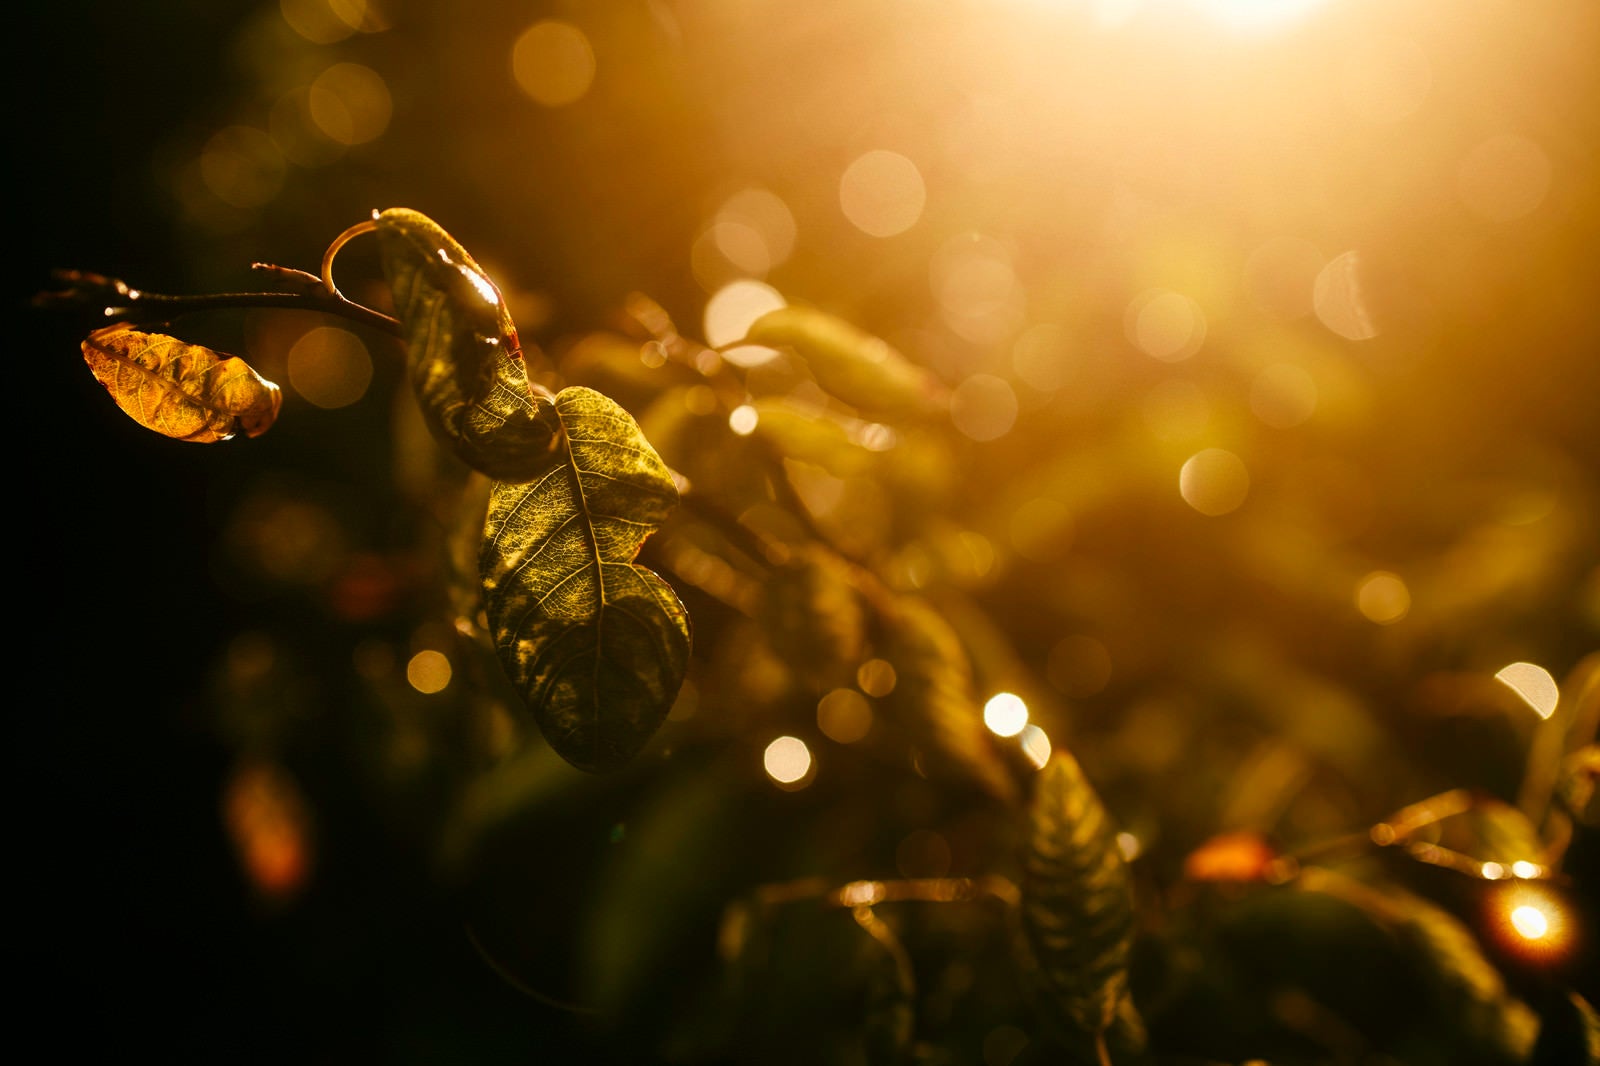 「夕焼けに輝く枯葉」の写真